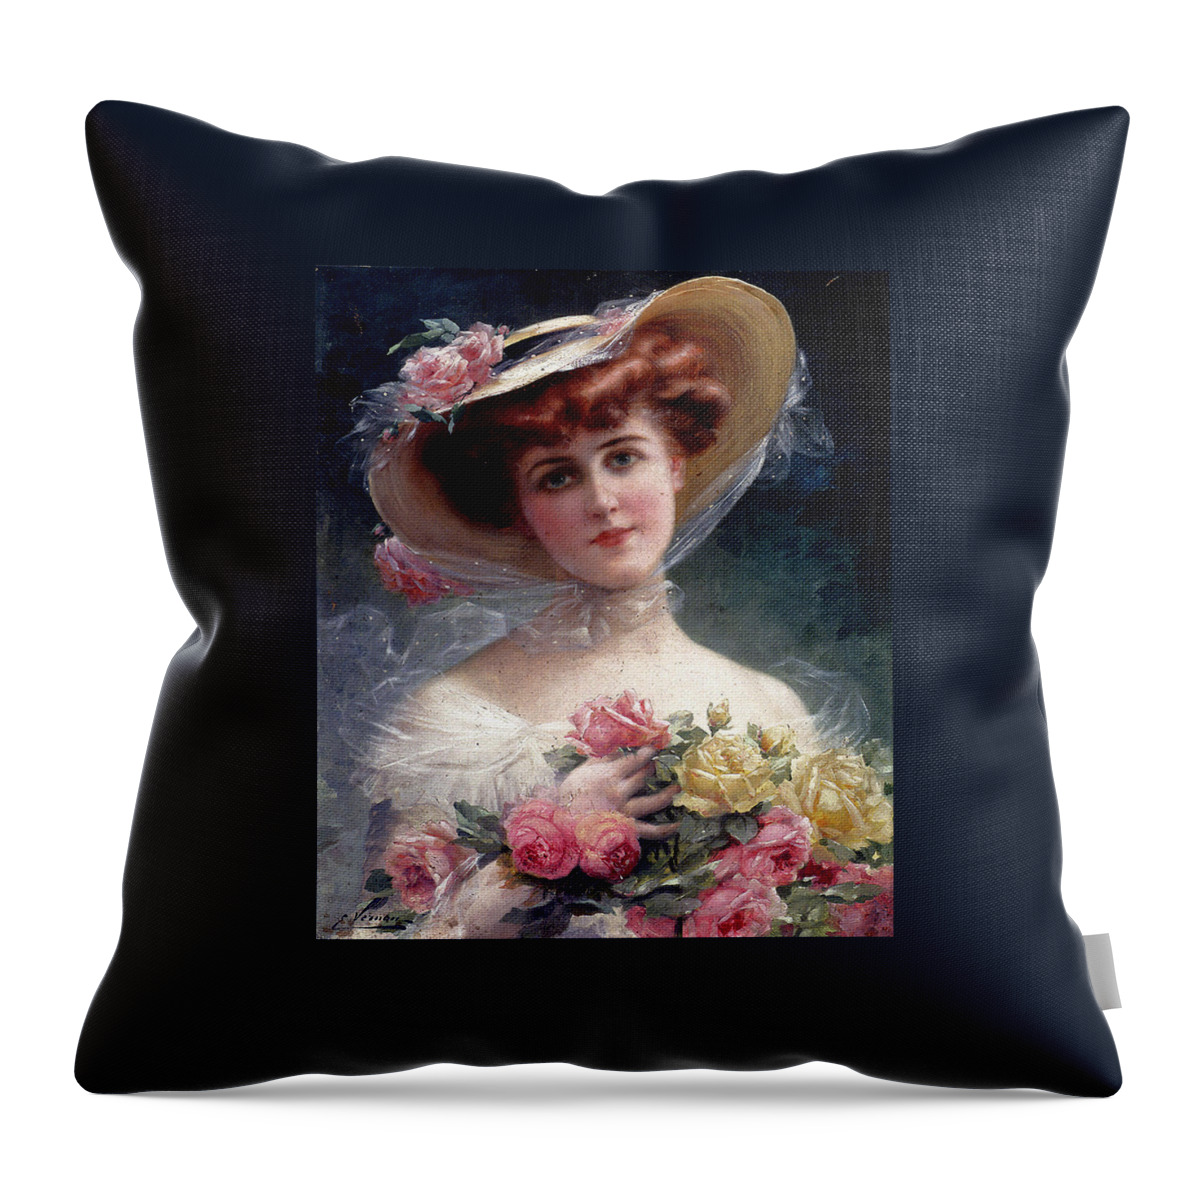 Emile Vernon Throw Pillow featuring the digital art La Belle Aux Fleurs by Emile Vernon